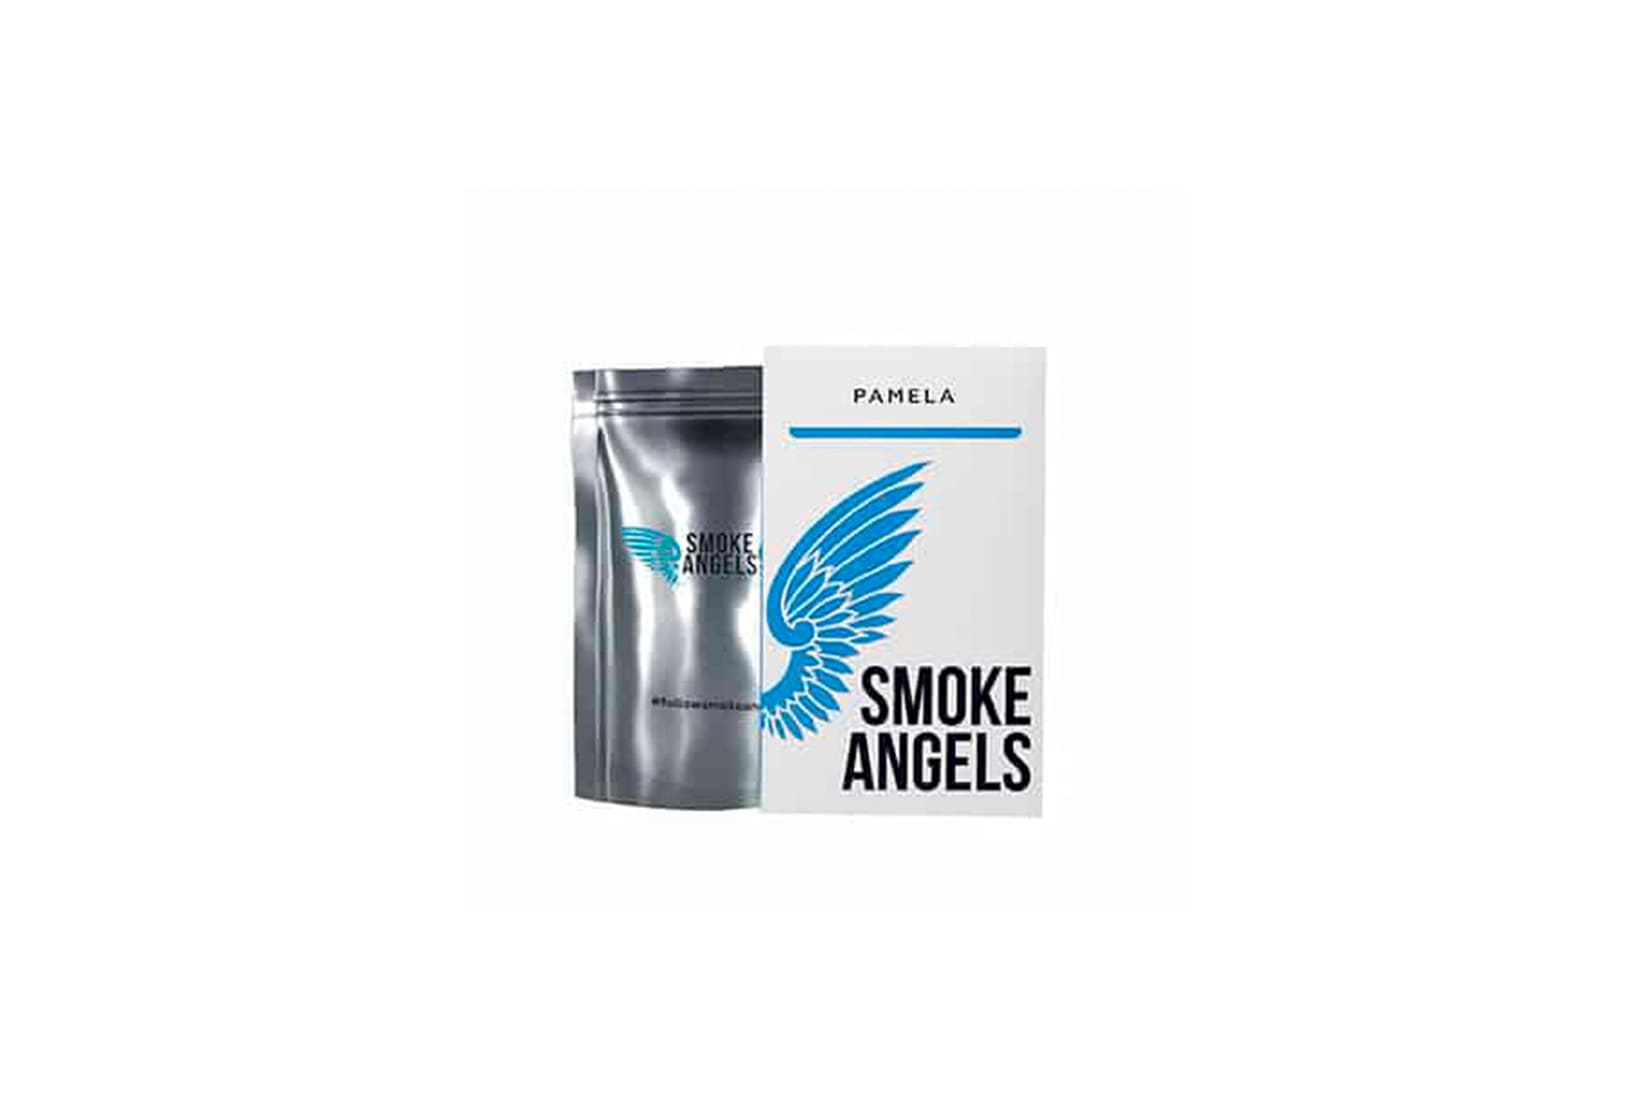 Табак для кальяна Smoke Angels PAMELA: описание, вкусы, миксы, отзывы